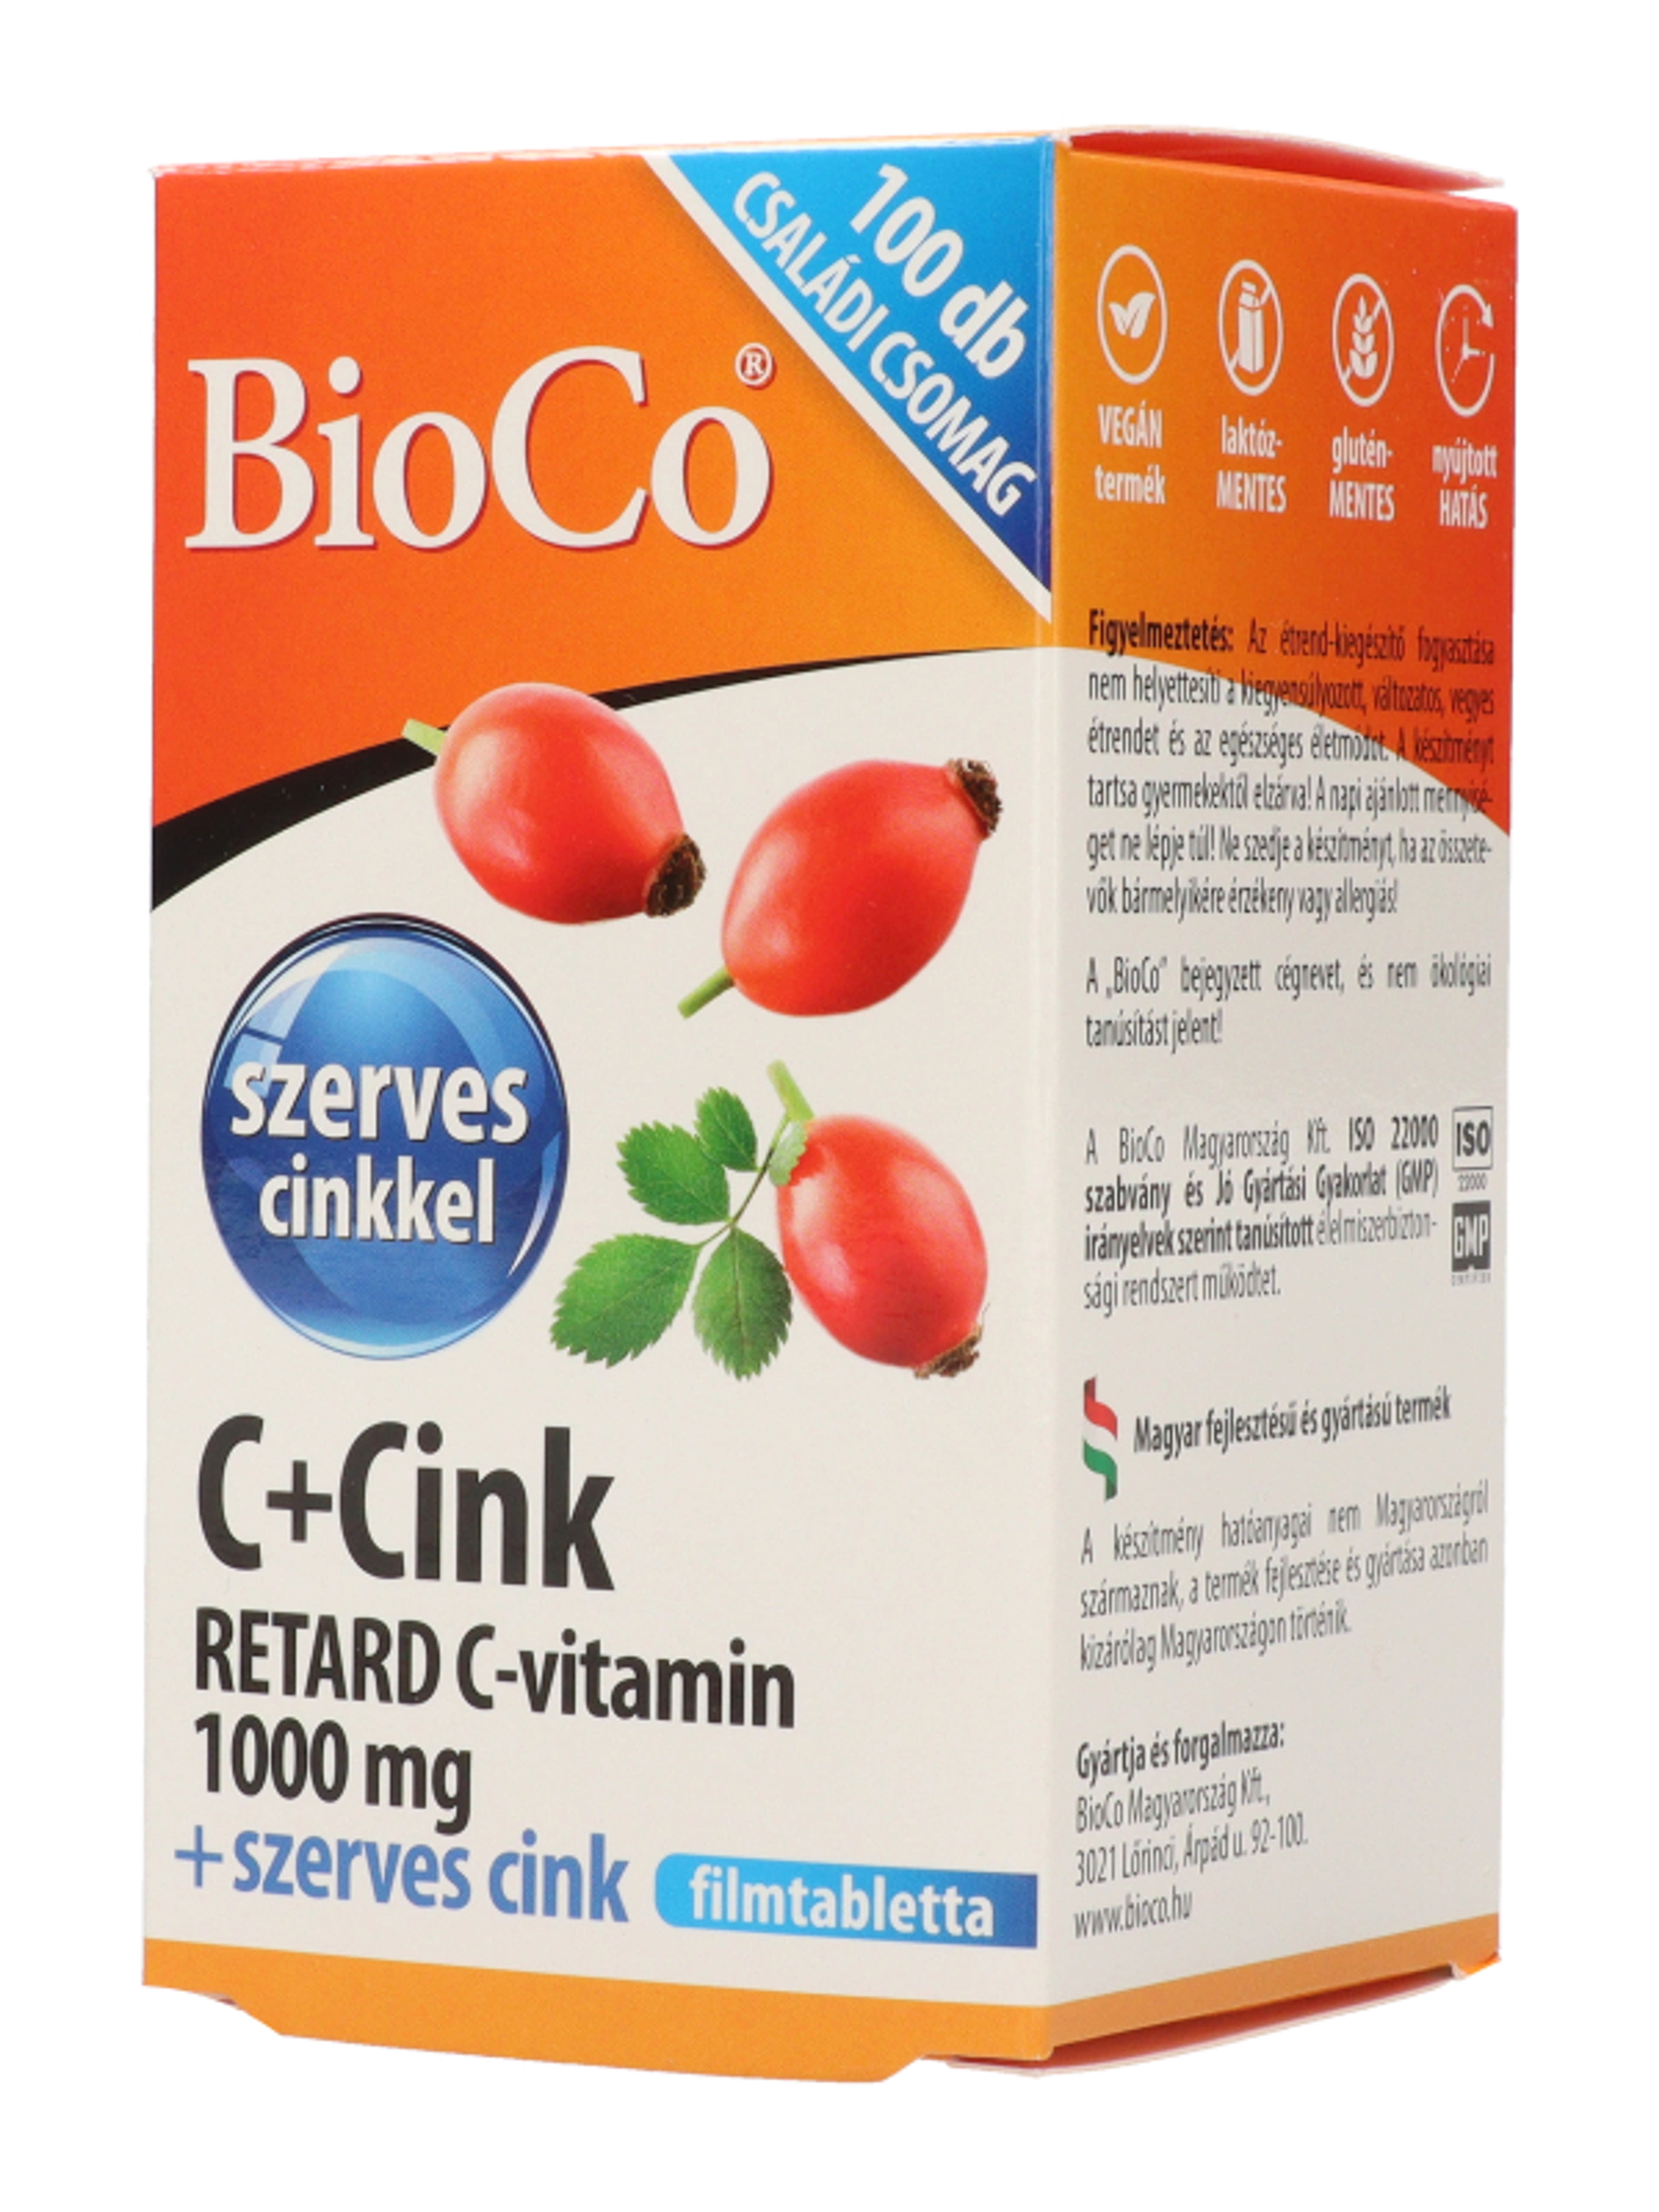 Bioco C+cink retard C-vitamin 1000 mg filmtabletta - 100 db-4